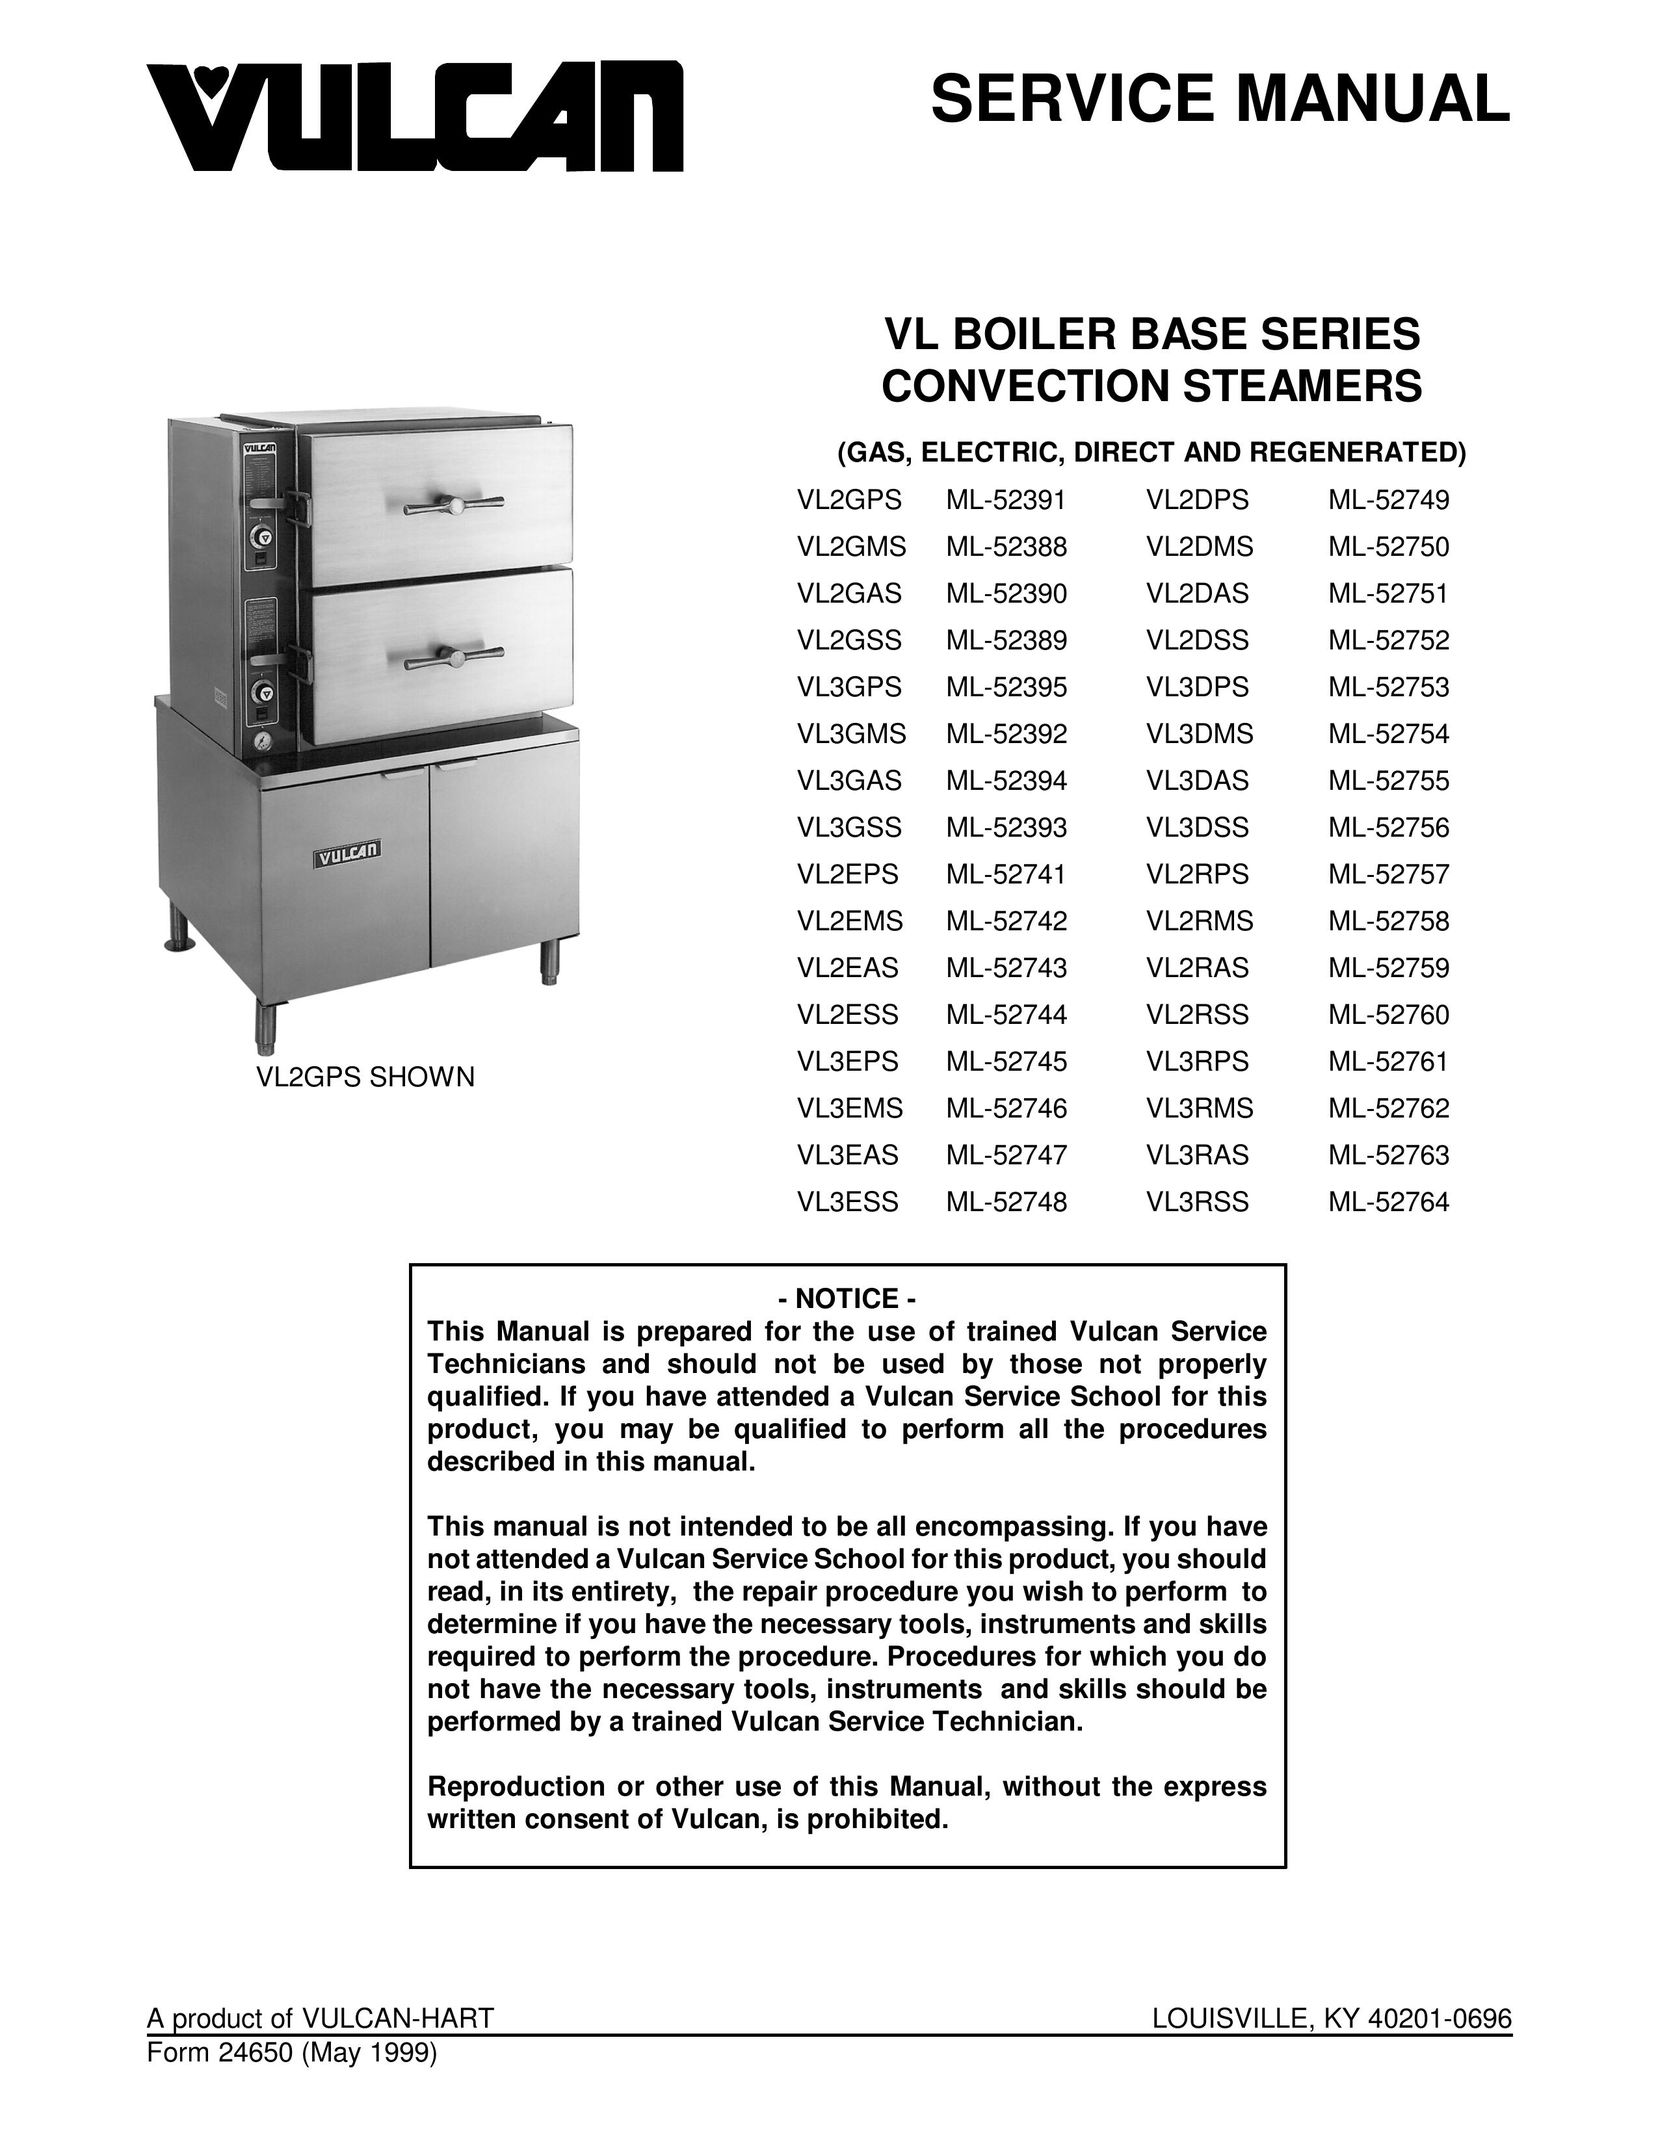 Vulcan-Hart VL2GAS Boiler User Manual